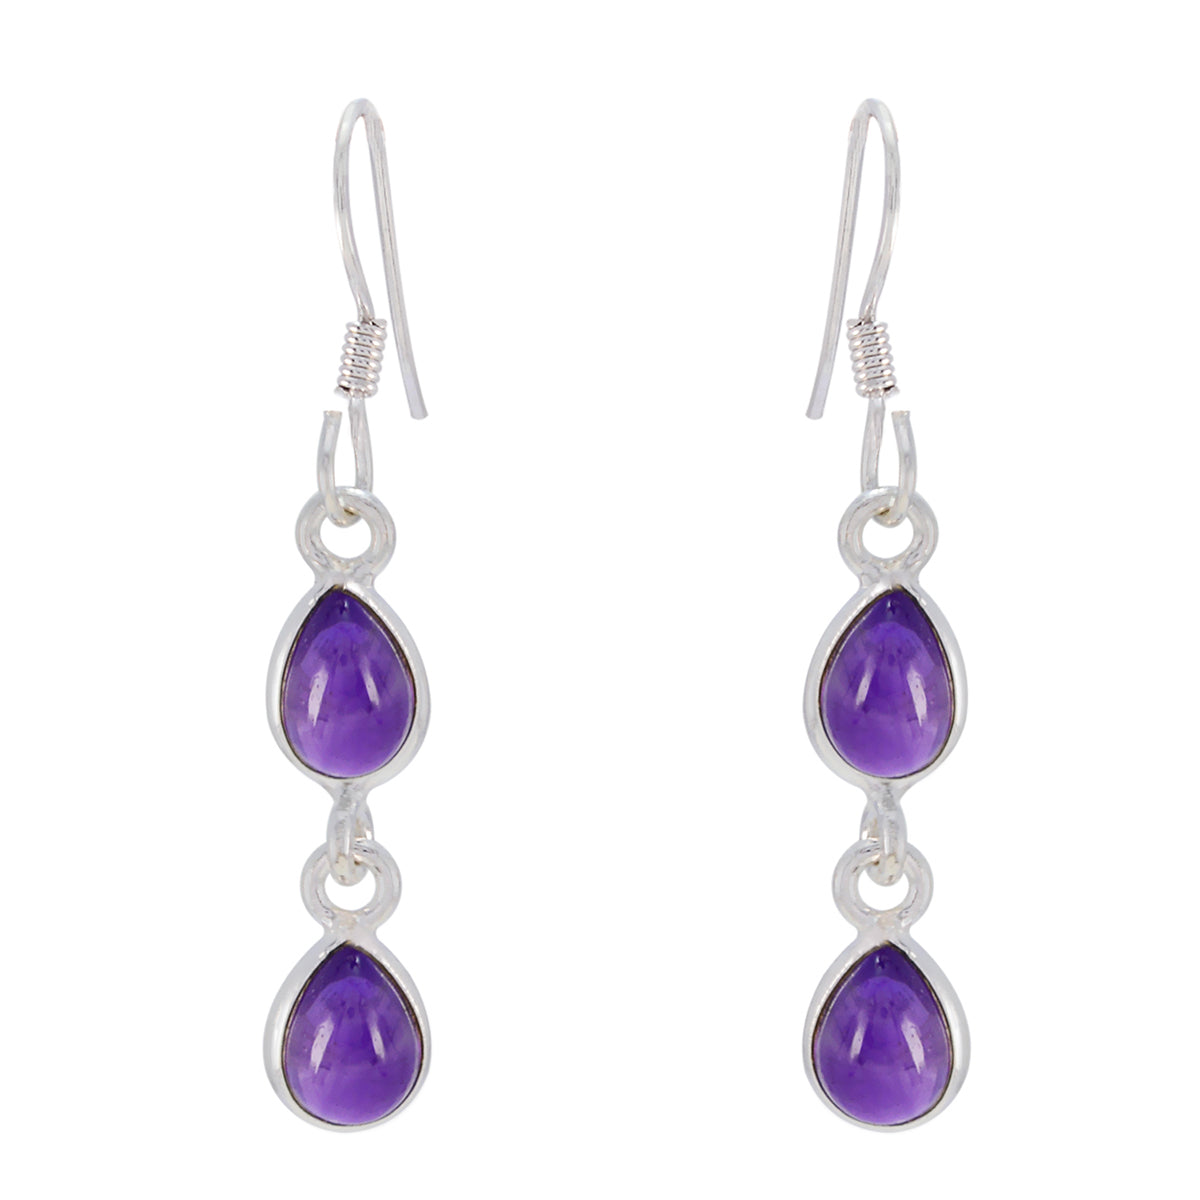 Riyo Good Gemstones pear Cabochon Purple Amethyst Silver Earring gift for black Friday